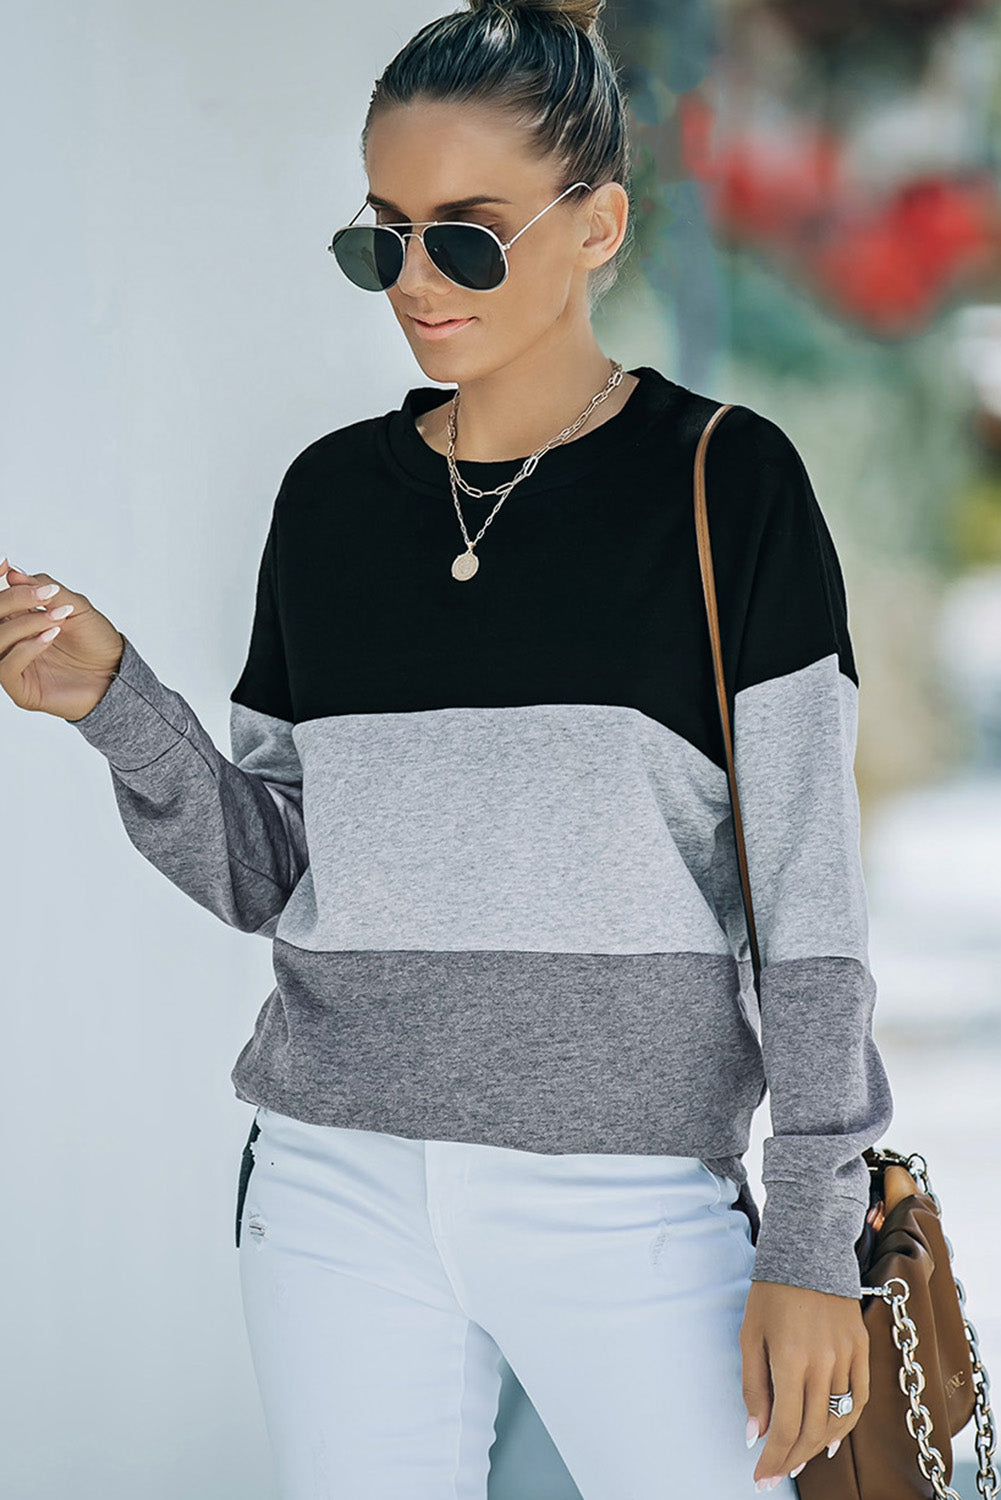 Schwarzes Colorblock-Sweatshirt mit Kontrastnähten und Schlitzen